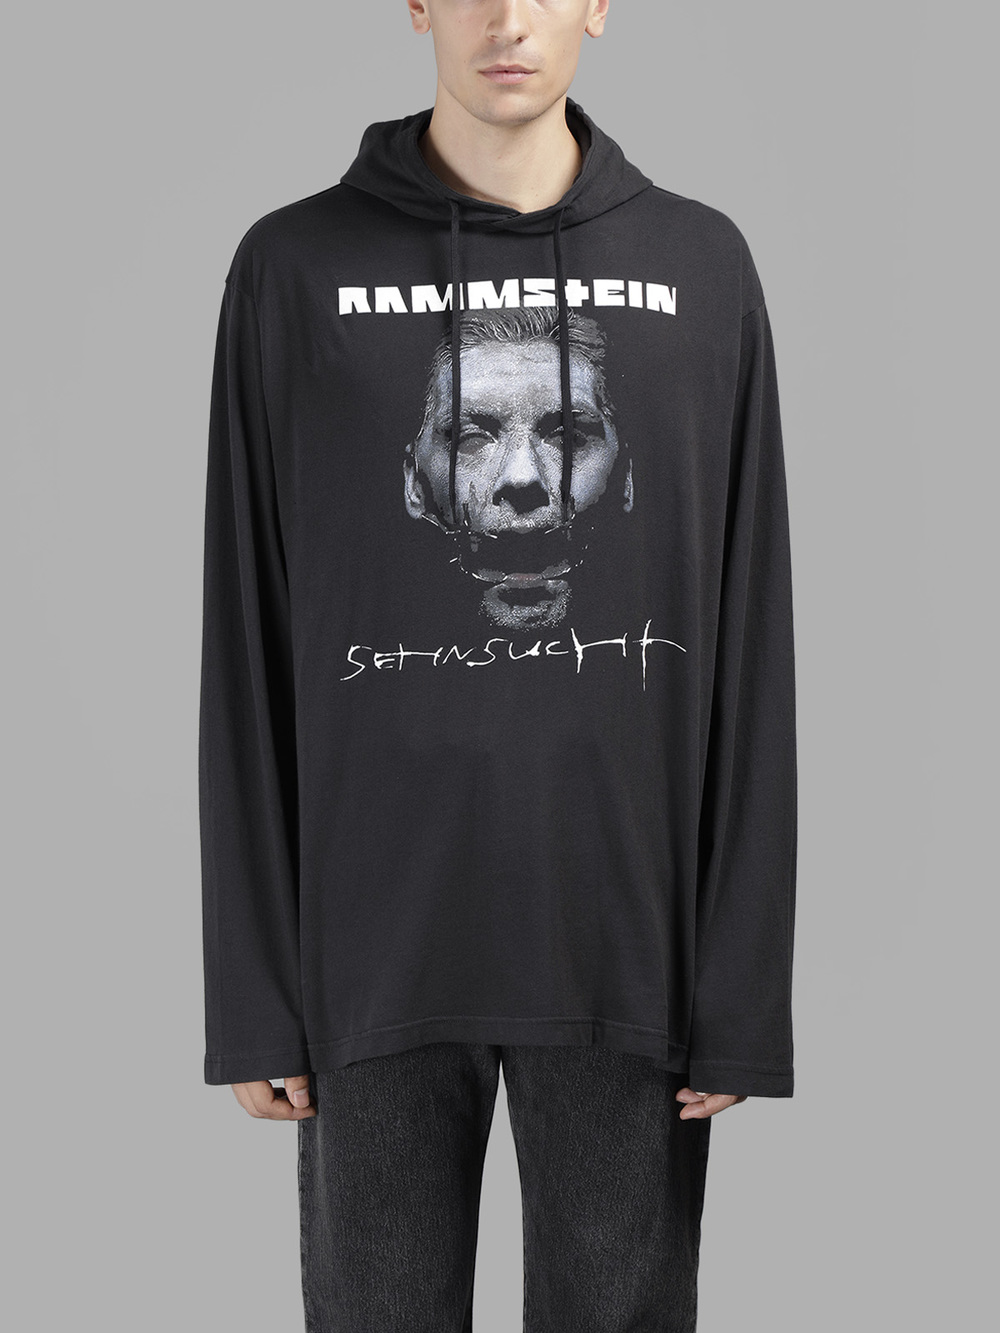 Vetements Release Rammstein Hoodie – PAUSE Online  Men's Fashion, Street  Style, Fashion News & Streetwear